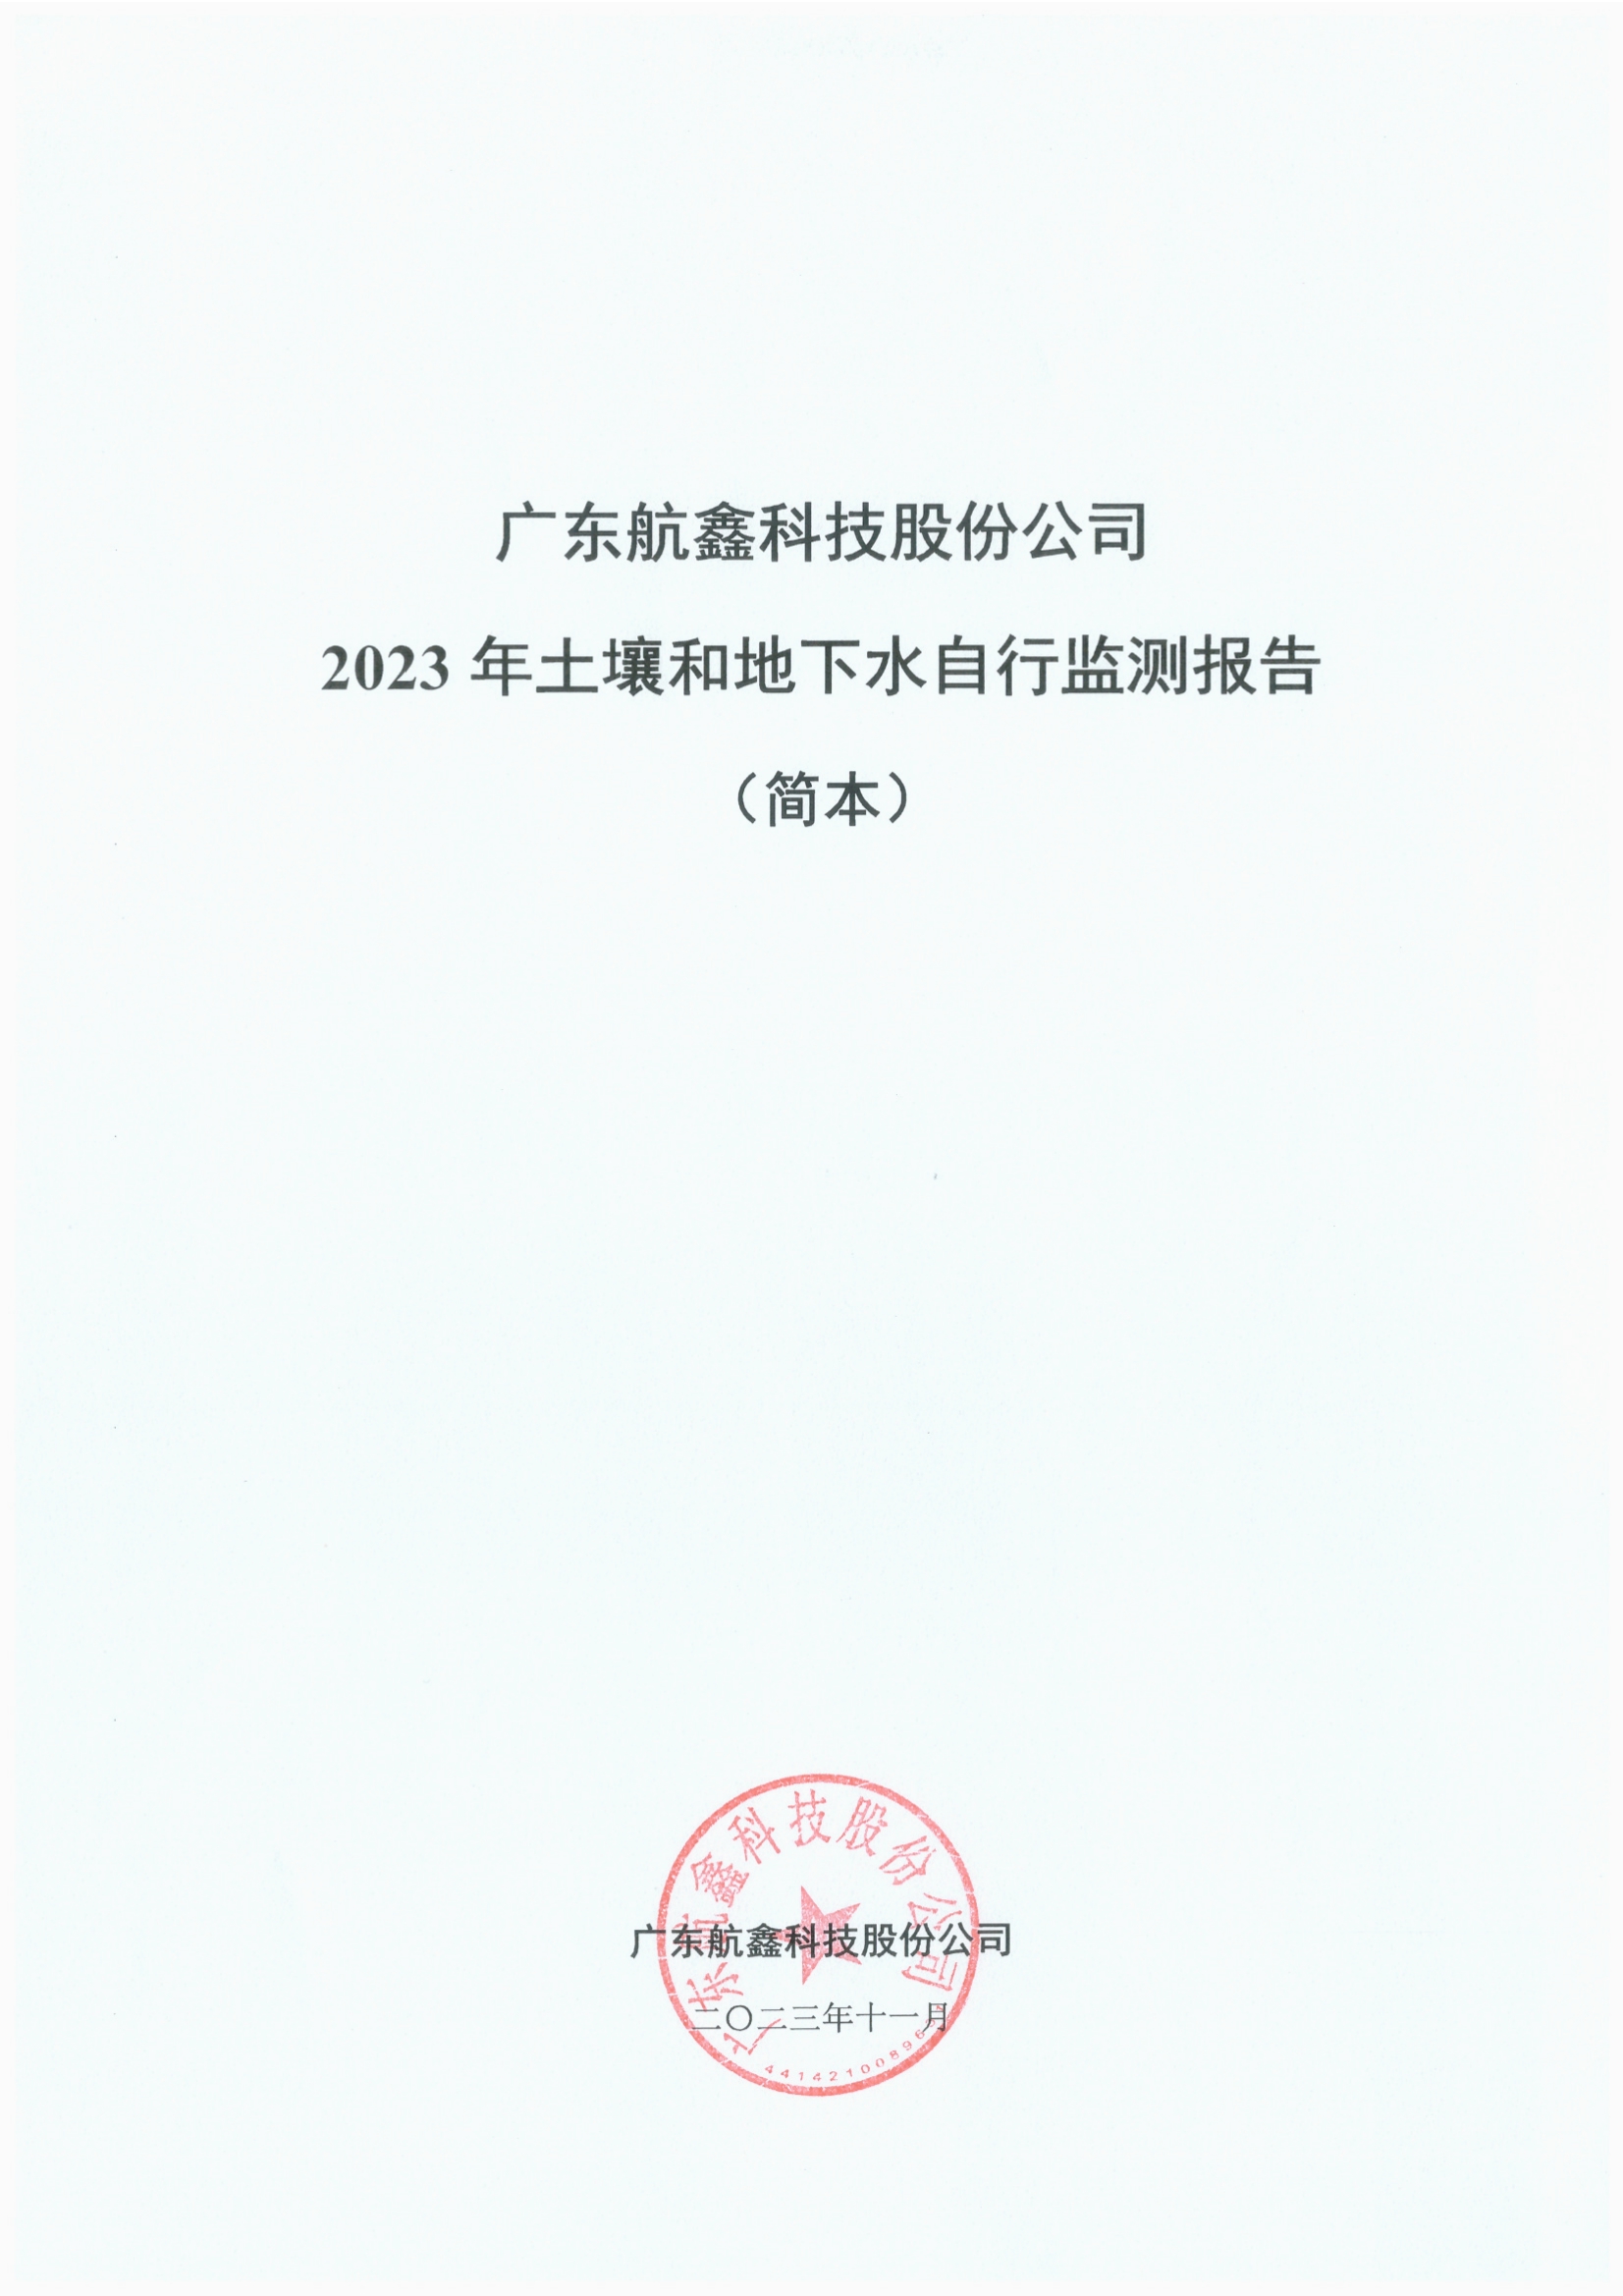 广东航鑫科技股份公司2023年土壤和地下水自行监测报告.jpg